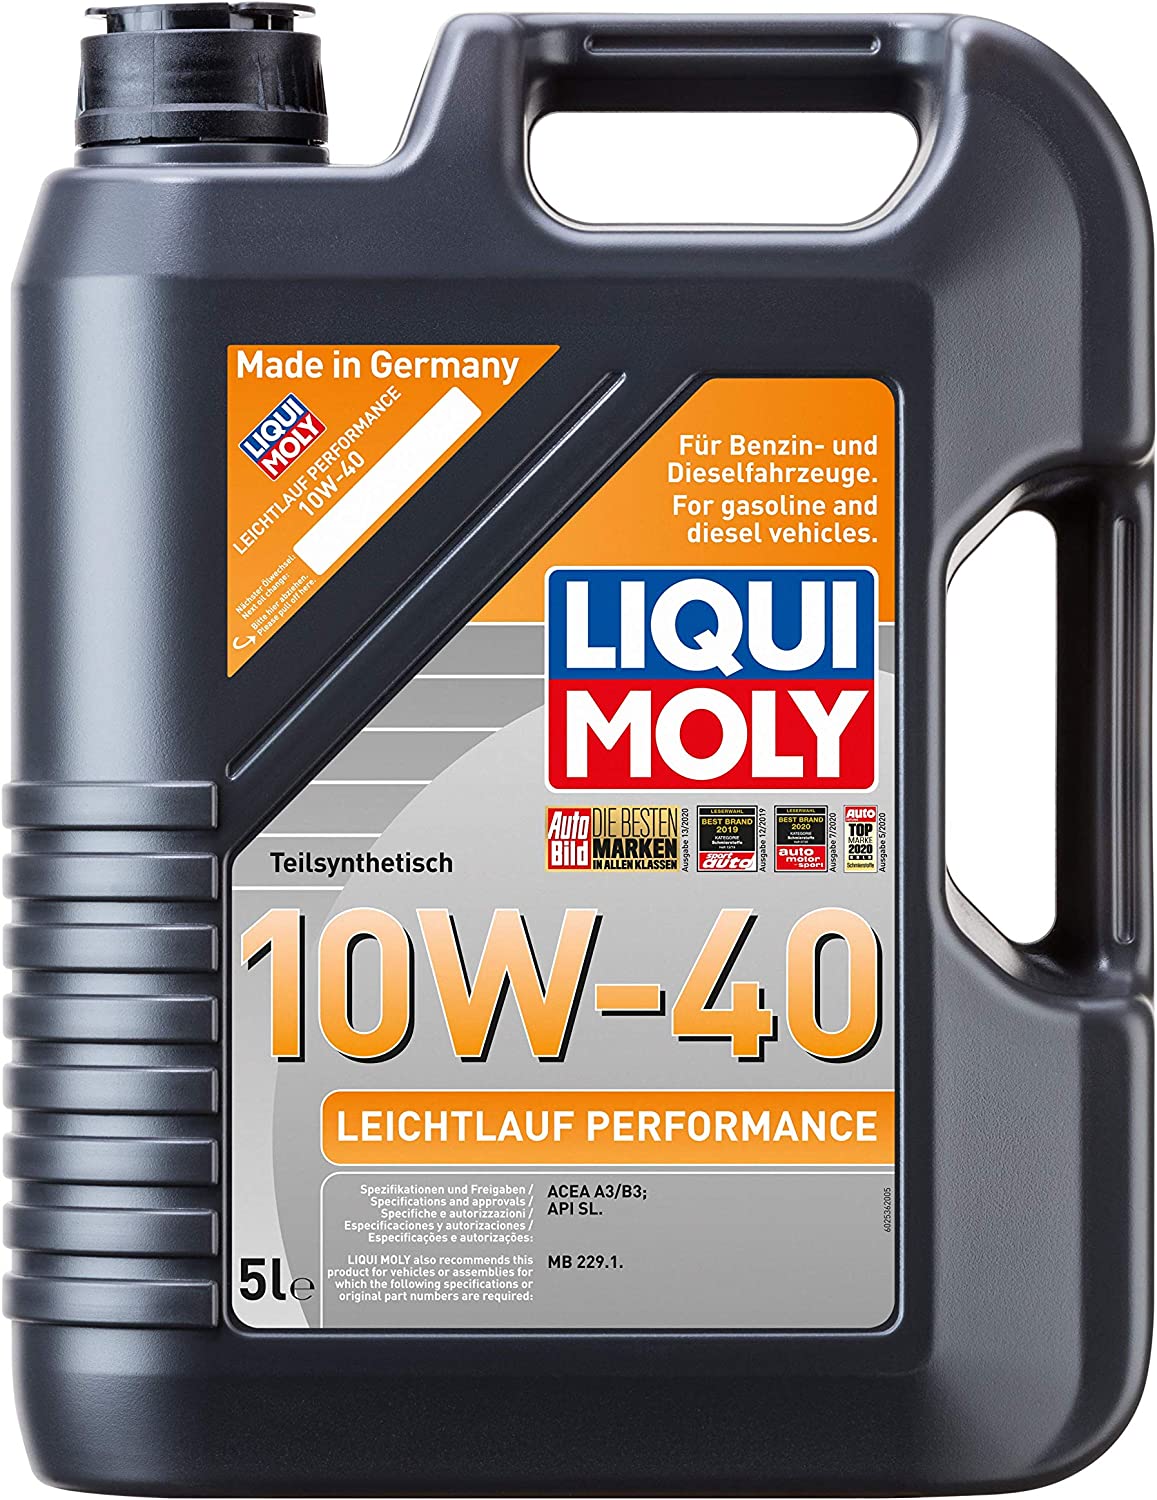 Liqui Moly Leichtlauf Performance 10W40 Motor Yağı (5 Litre) - 2536 - KolayOto